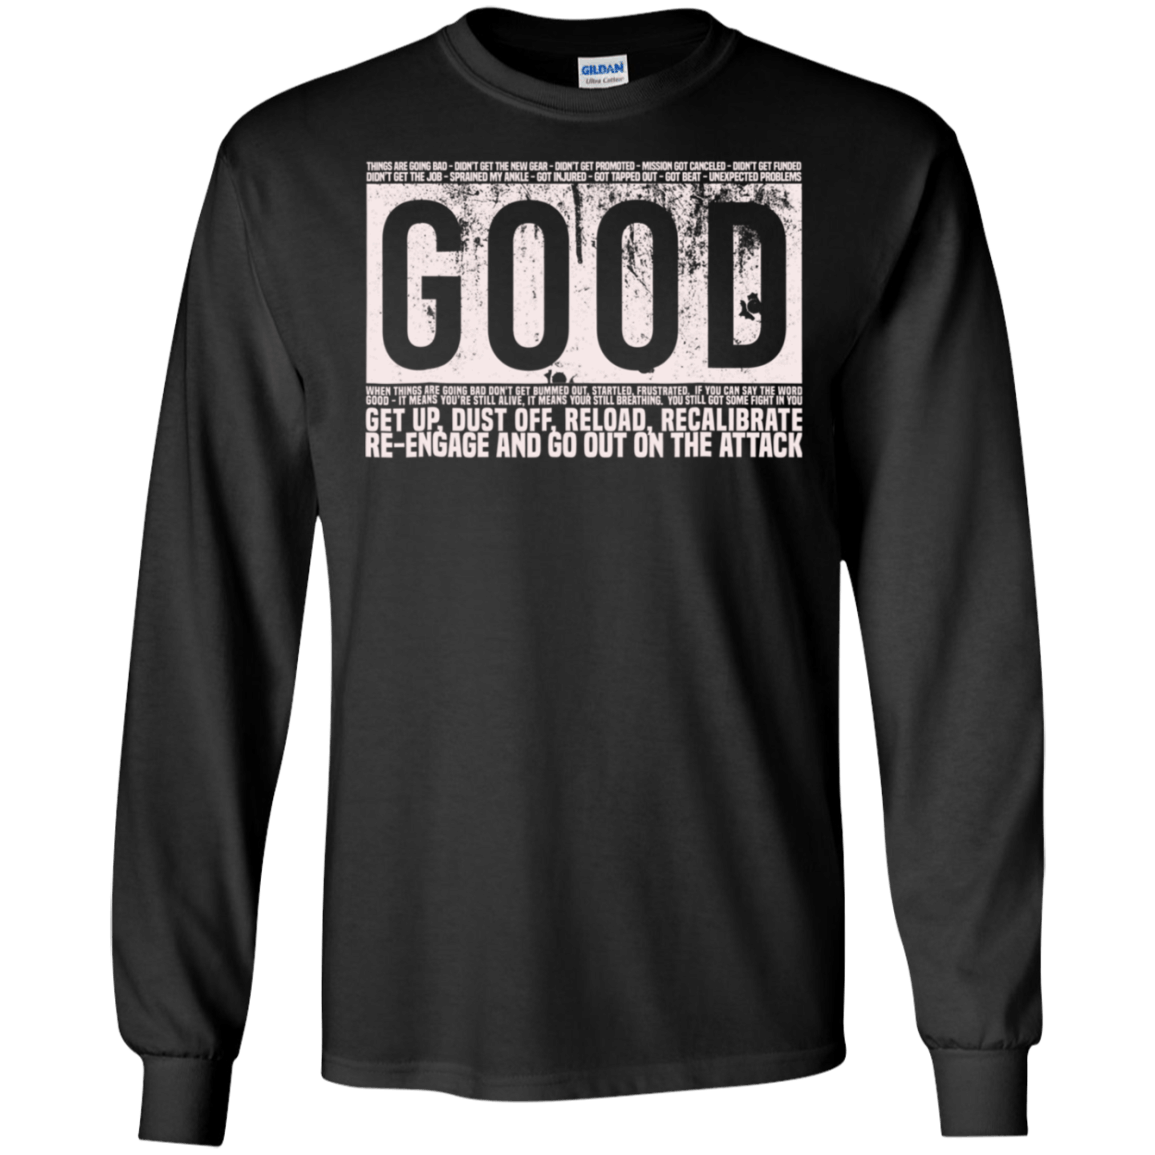 GOOD Shirt Motivational Jocko Quote - Navy Seals Ultra Cotton Shirt ...